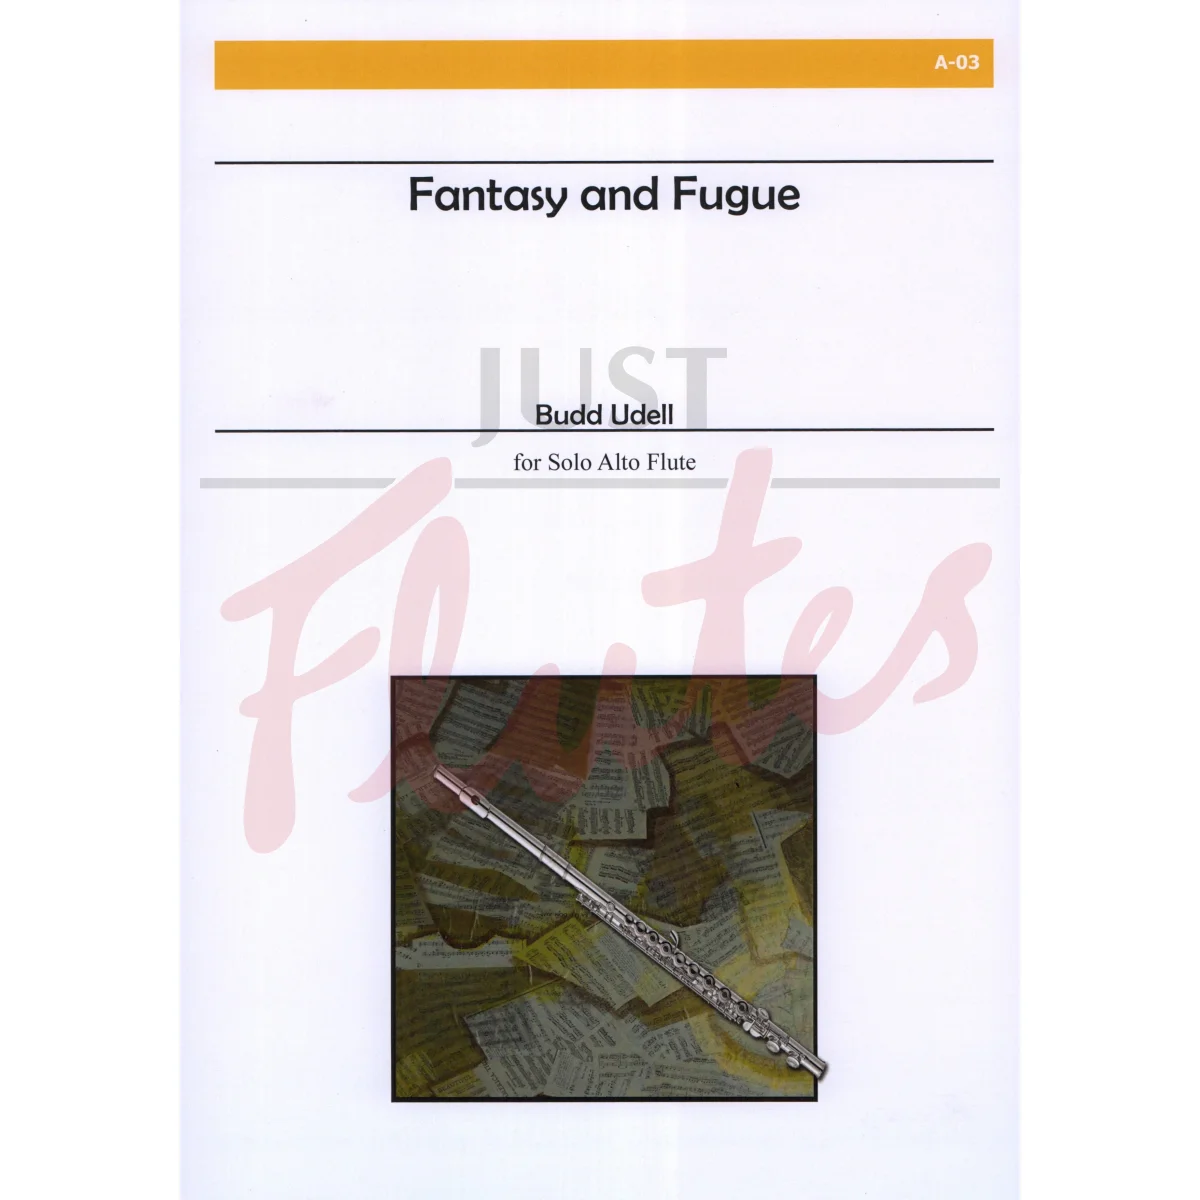 Fantasy and Fugue for Solo Alto Flute